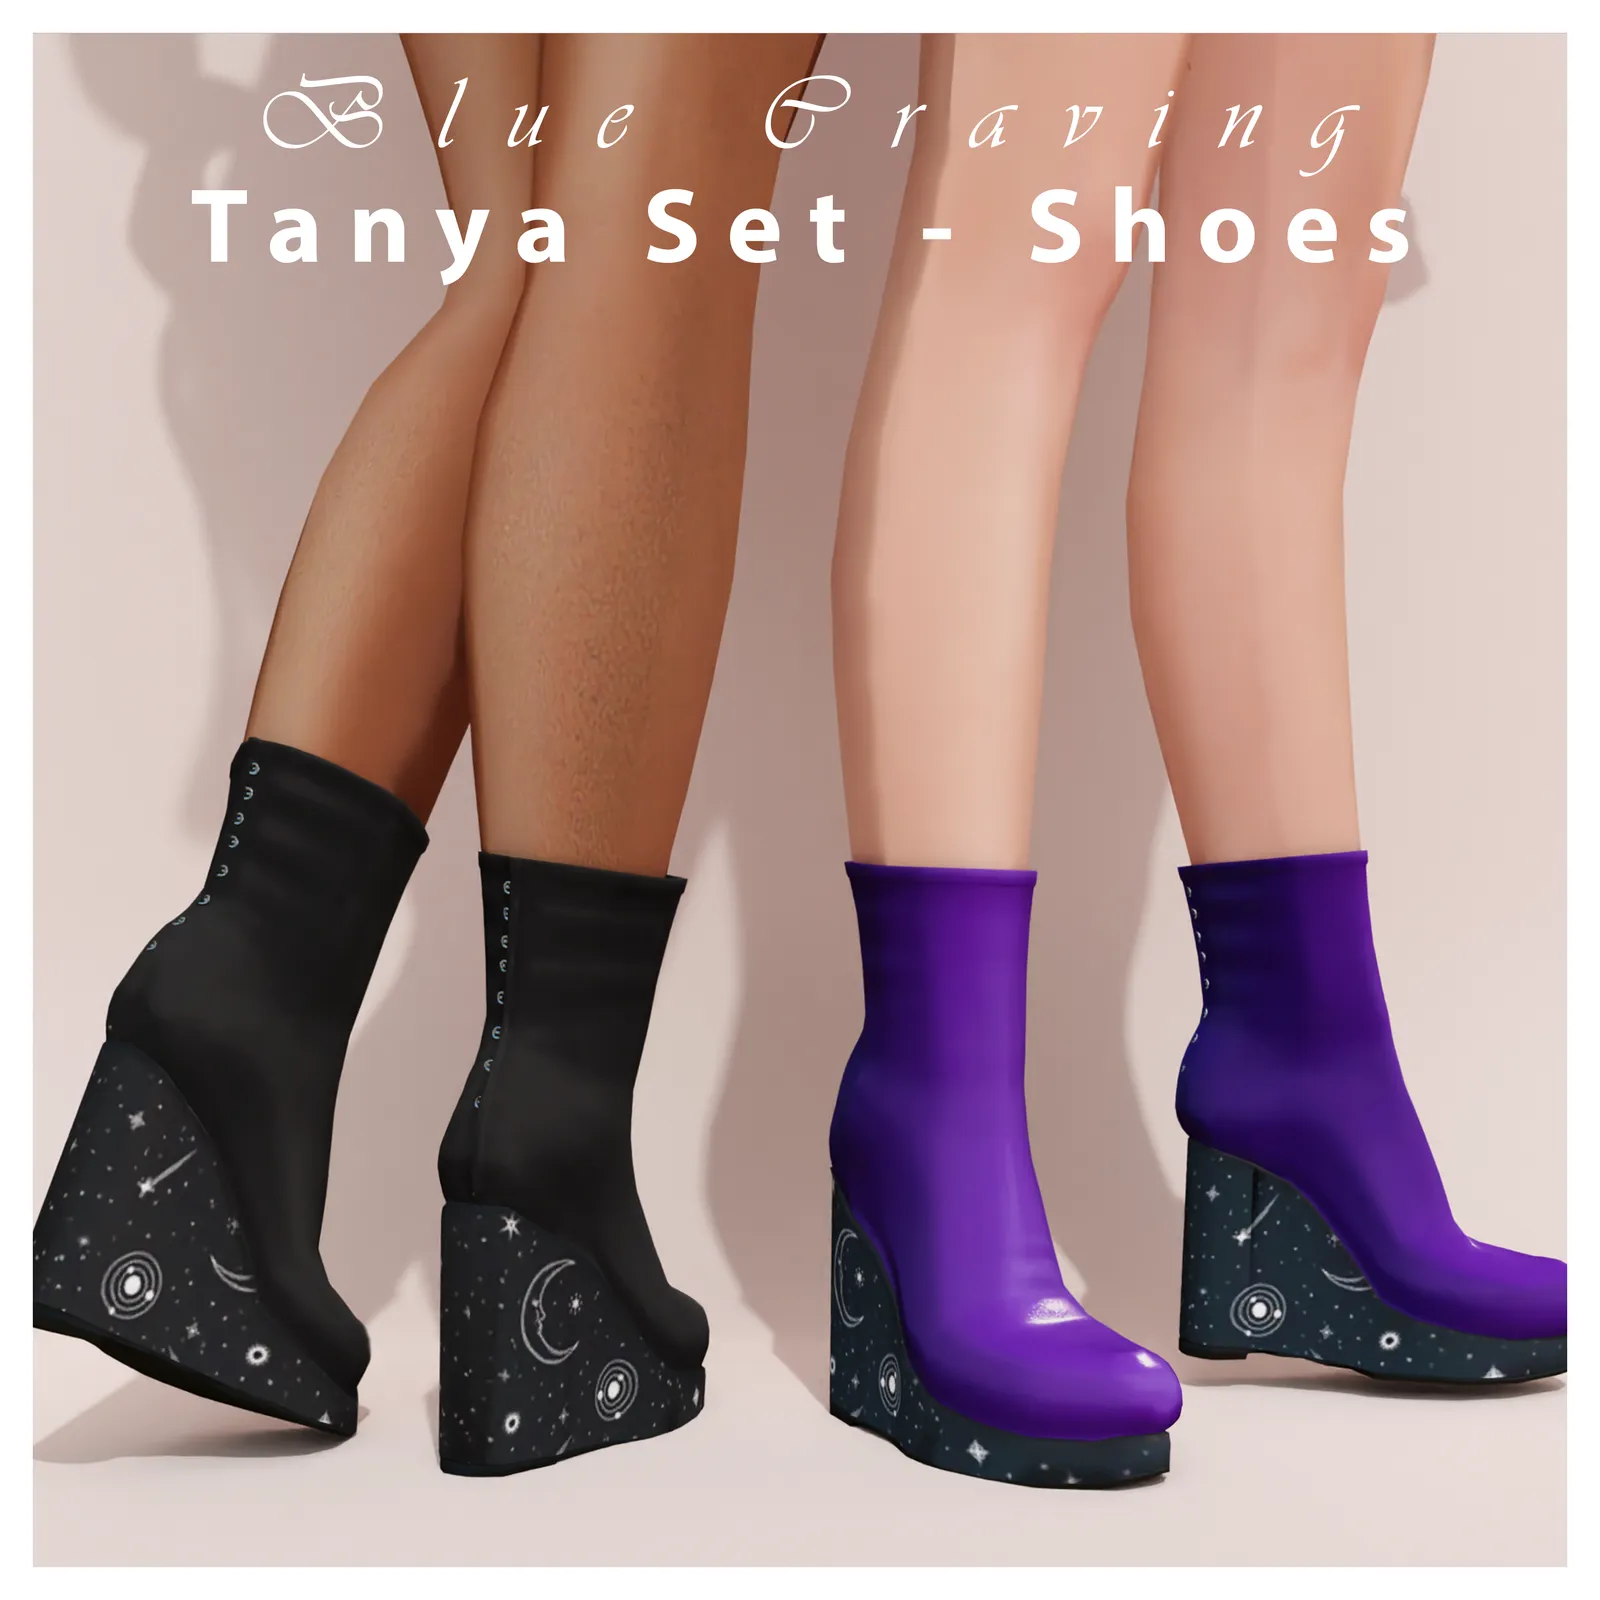 Tanya Set - Boots